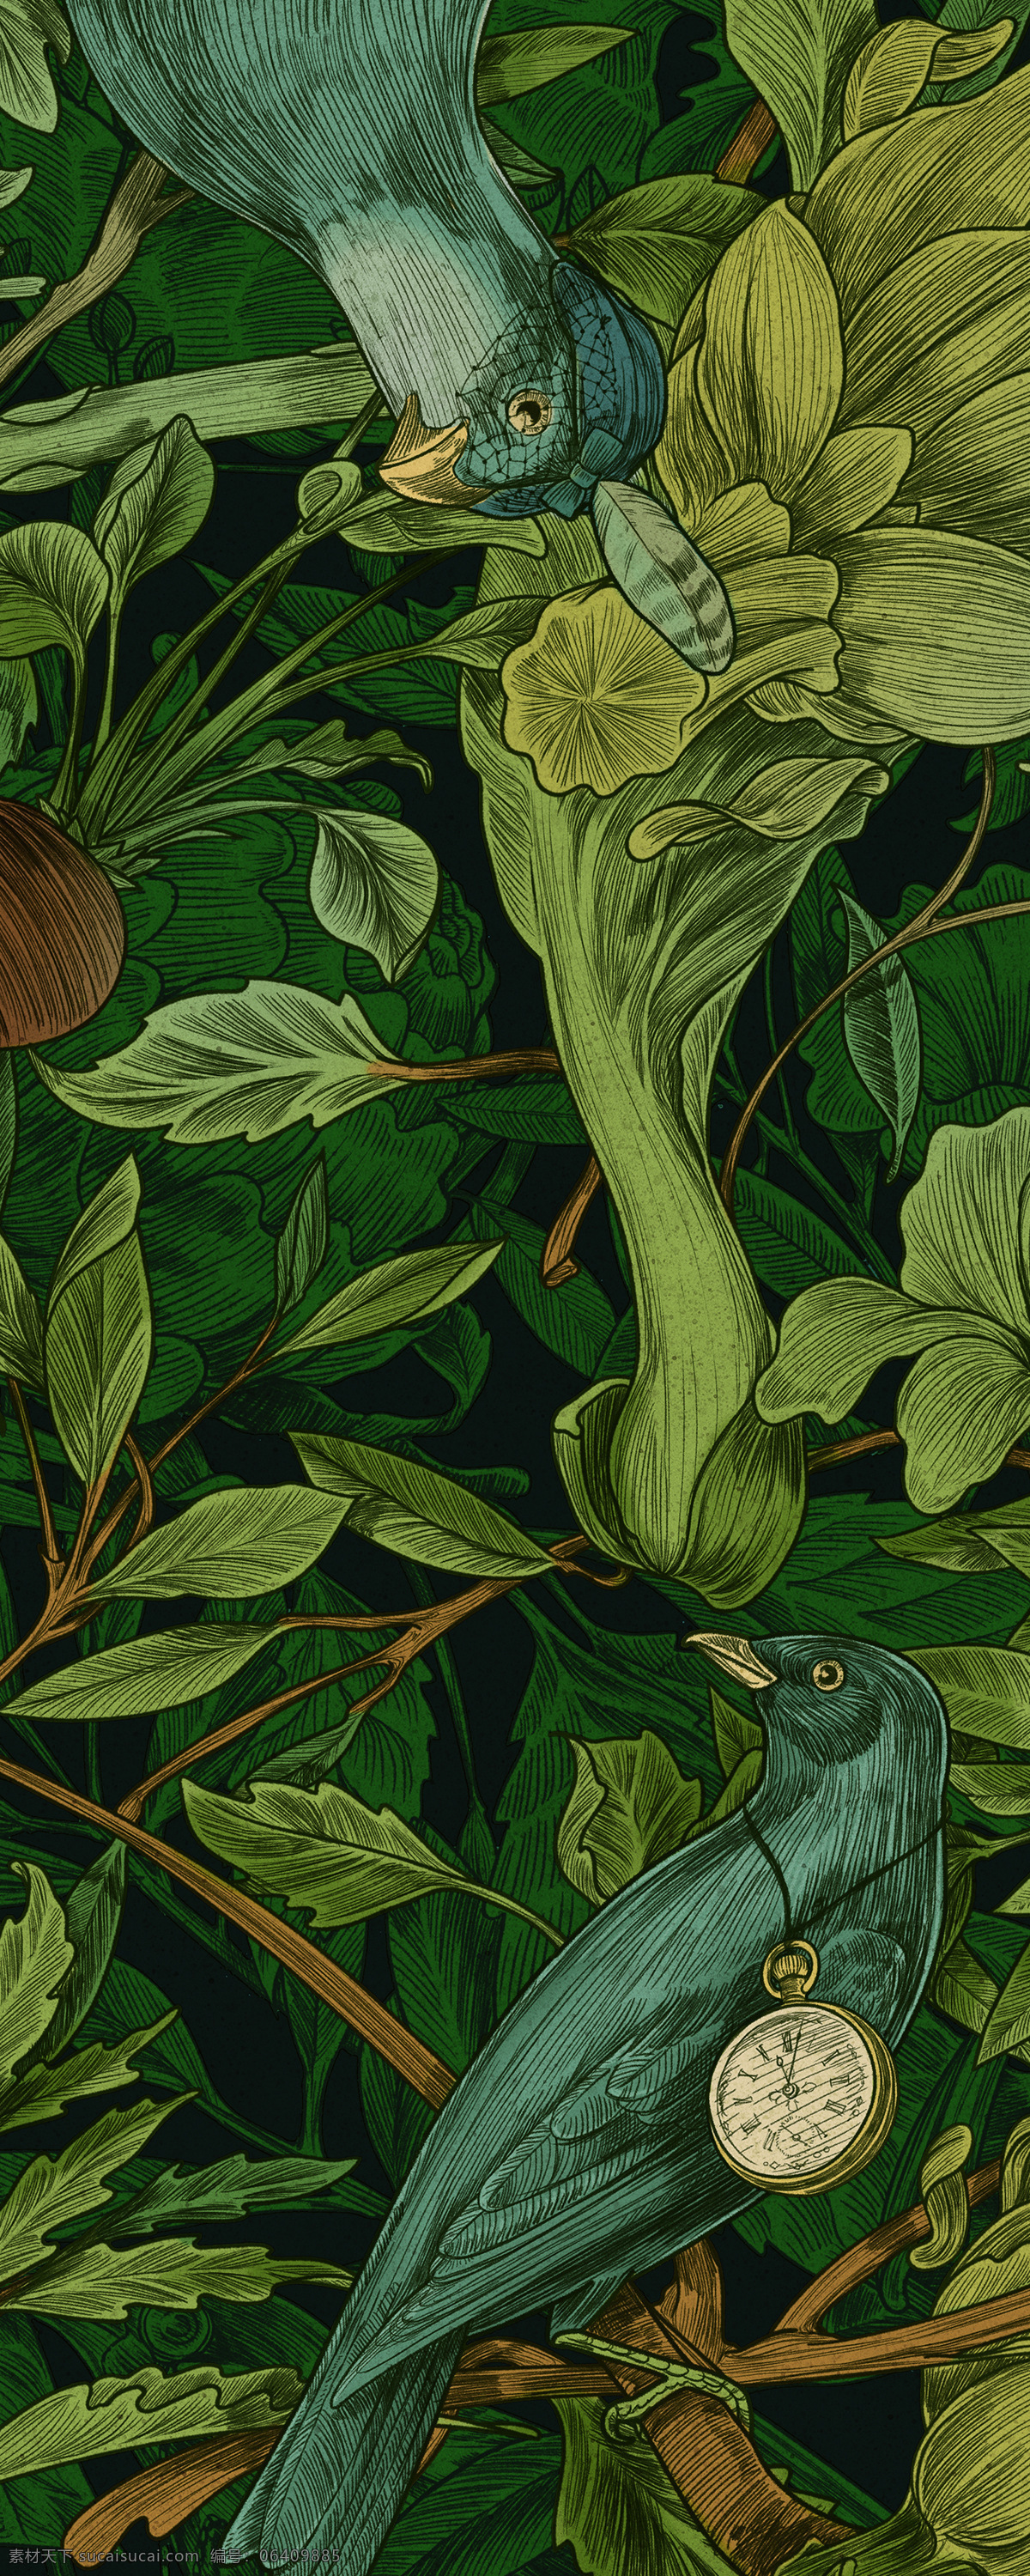 绿色植物背景 绿色 植物 背景 肌理感 森系 树叶 鸟 花草 园林 底纹 底纹边框 背景底纹